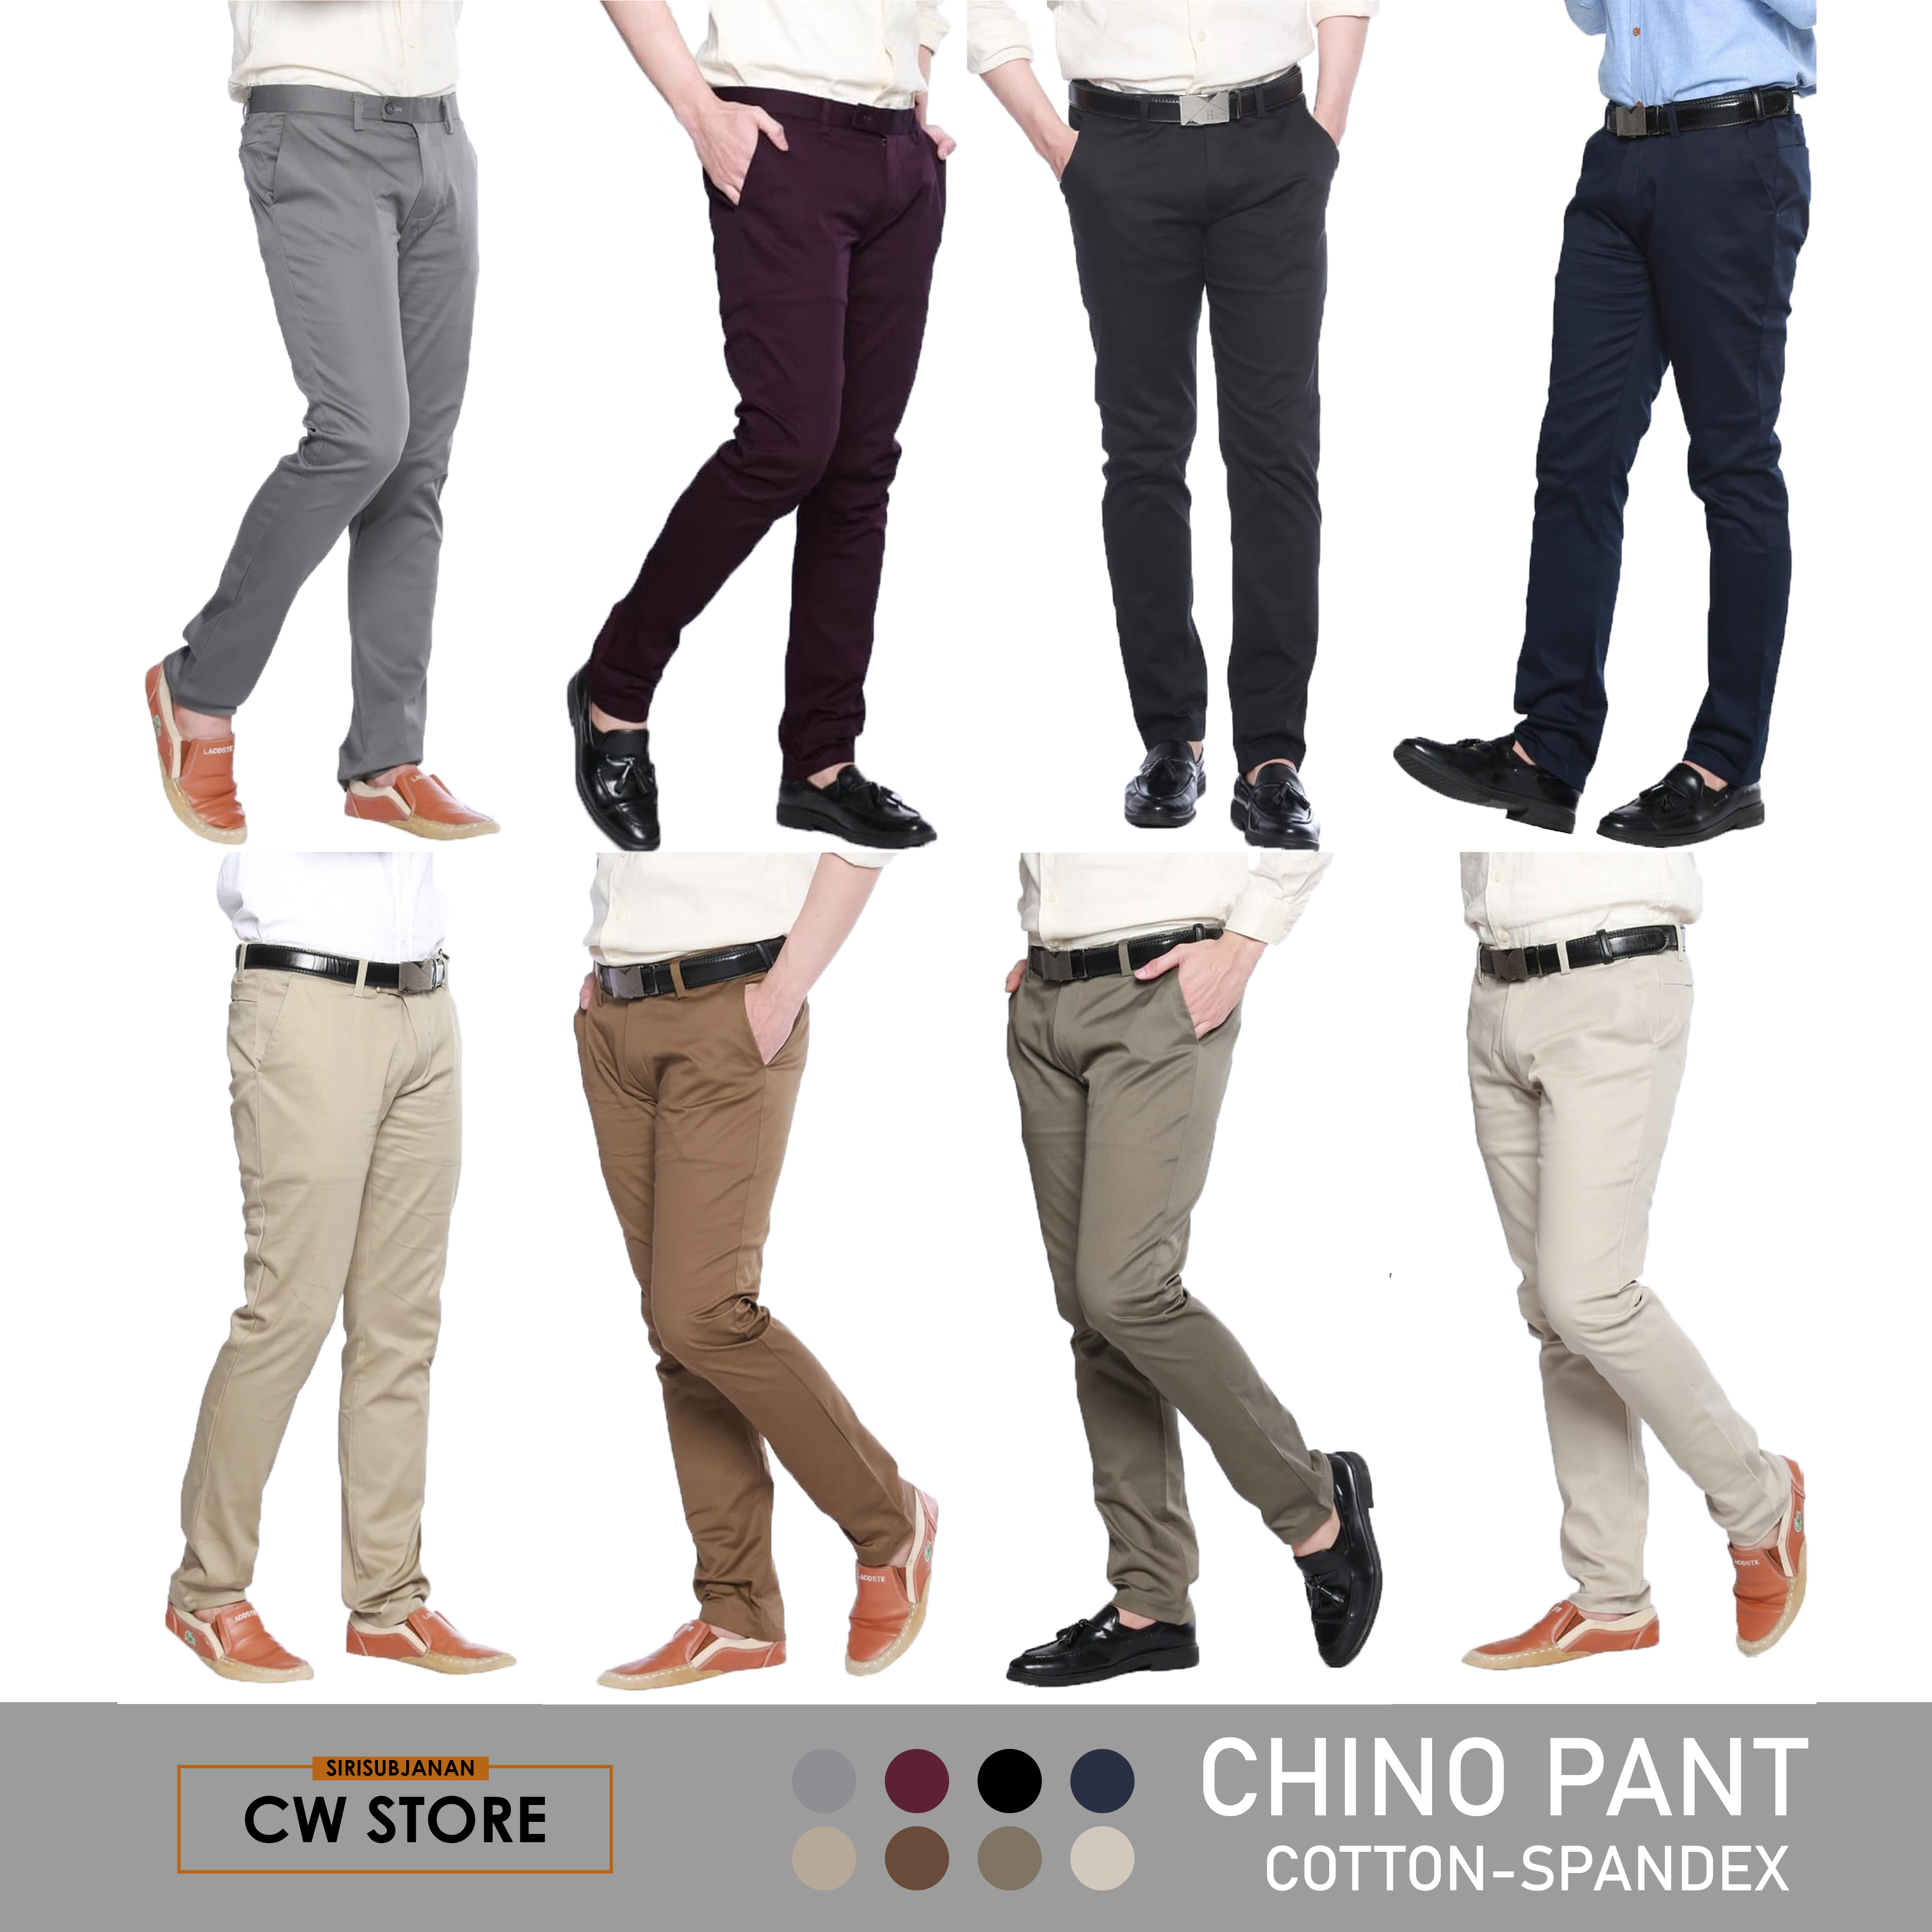 กางเกงชิโน่ เข้ารูป กางเกงขายาวผู้ชาย กางเกงทรงกระบอกเล็ก กางเกงขายาว(slim) กางเกงทำงาน กระบอกเล็ก